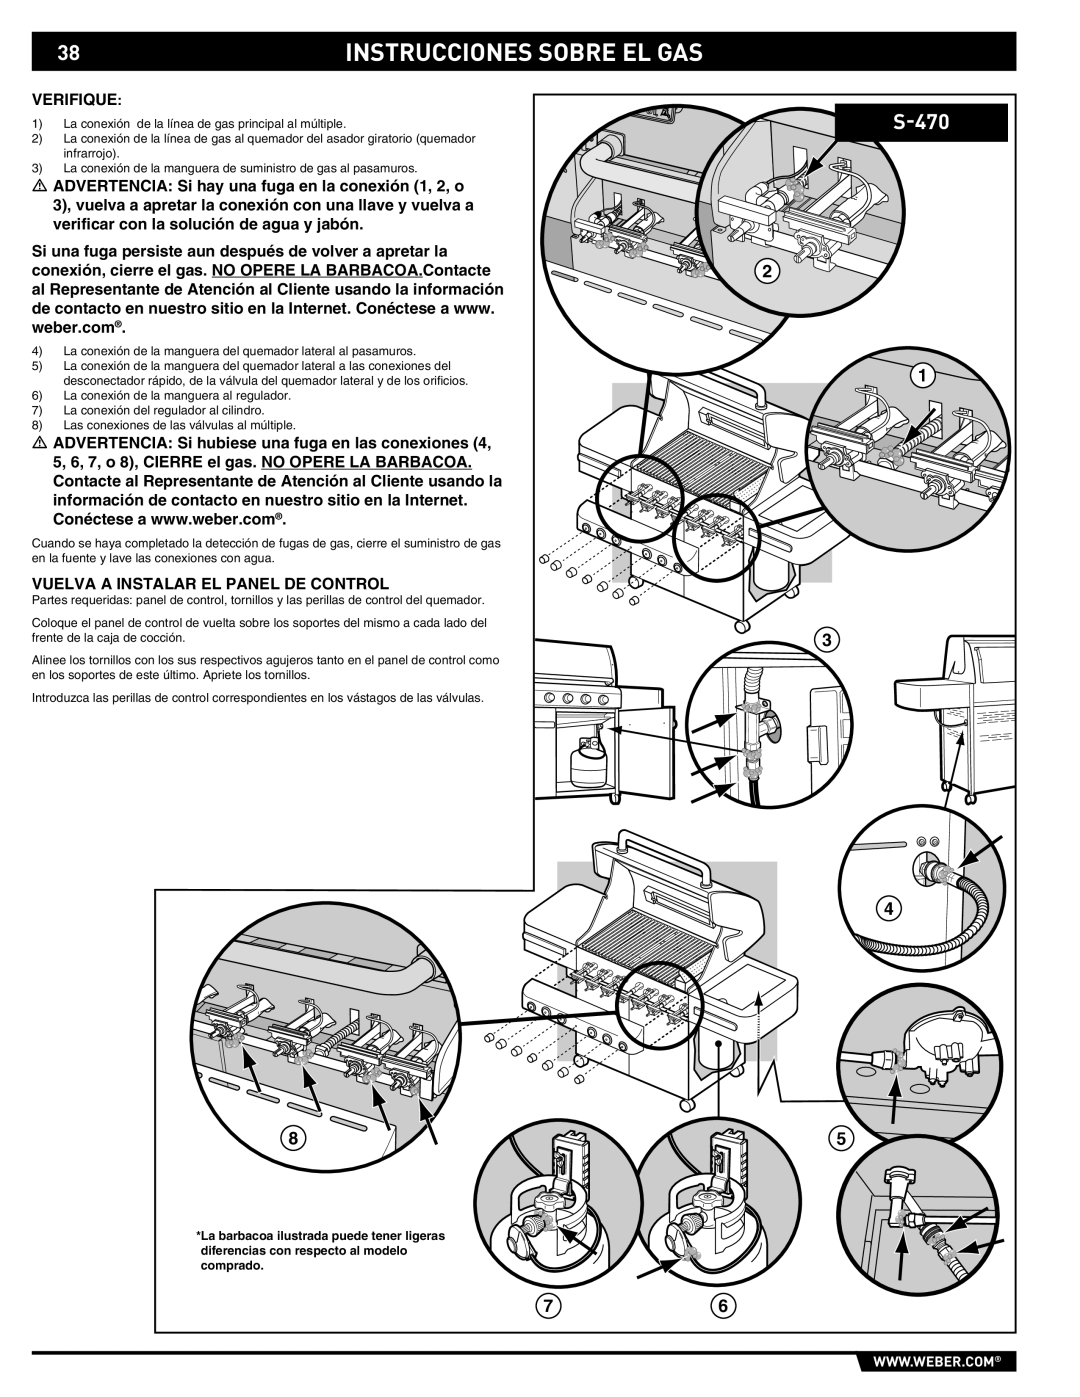 Summit 89190 manual S-470, Verifique, Vuelva A Instalar El Panel De Control 